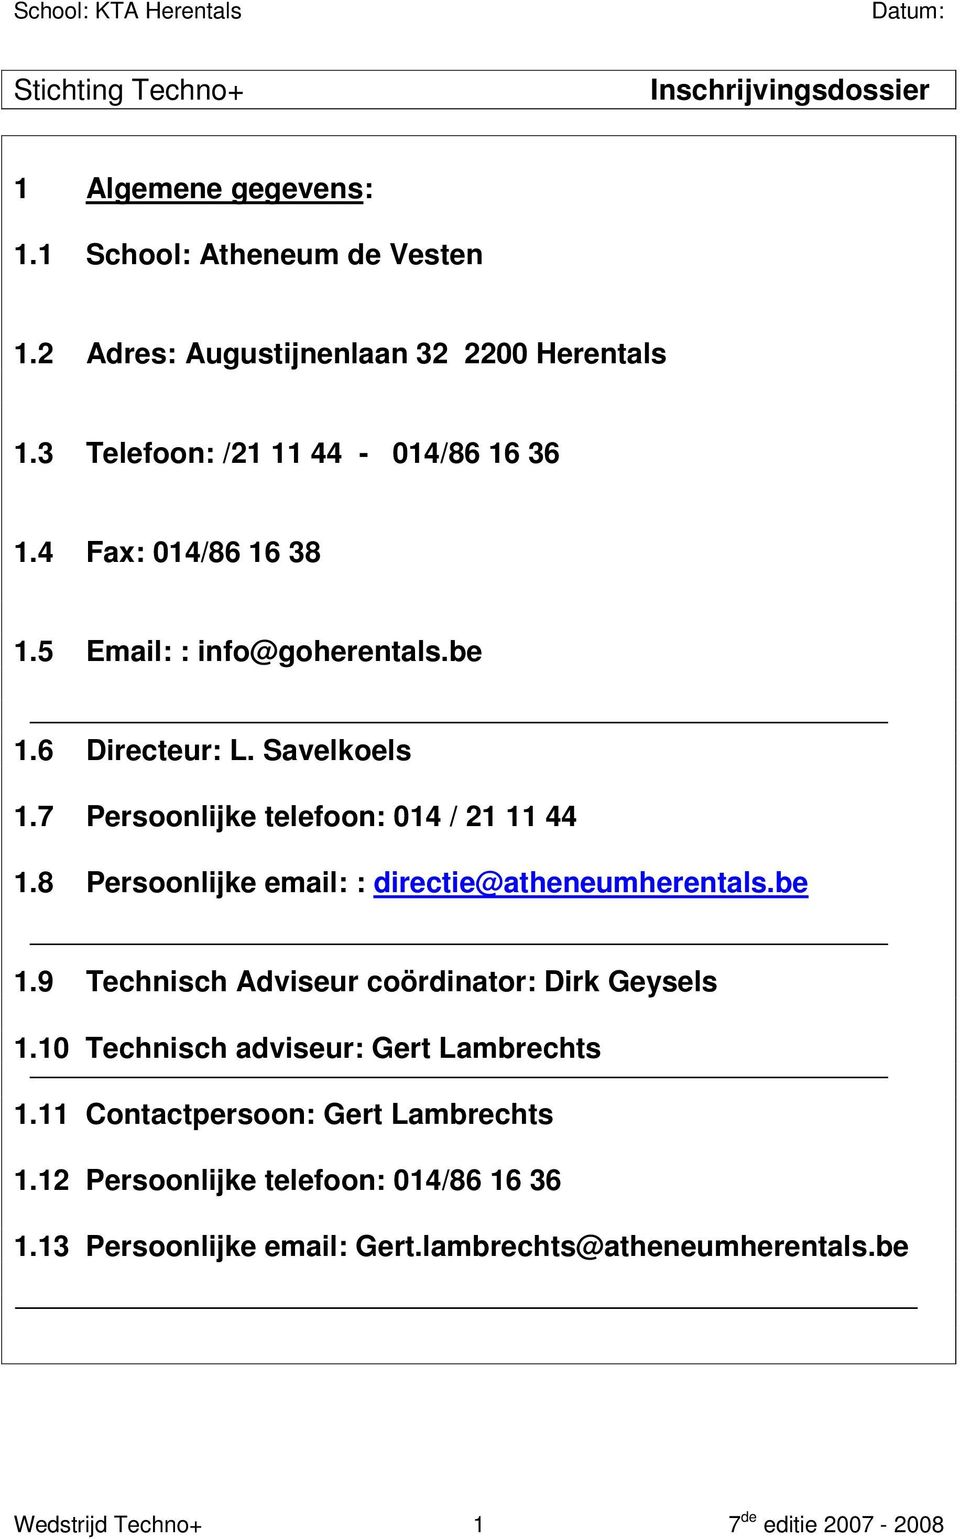 7 Persoonlijke telefoon: 014 / 21 11 44 1.8 Persoonlijke email: : directie@atheneumherentals.be 1.9 Technisch Adviseur coördinator: Dirk Geysels 1.